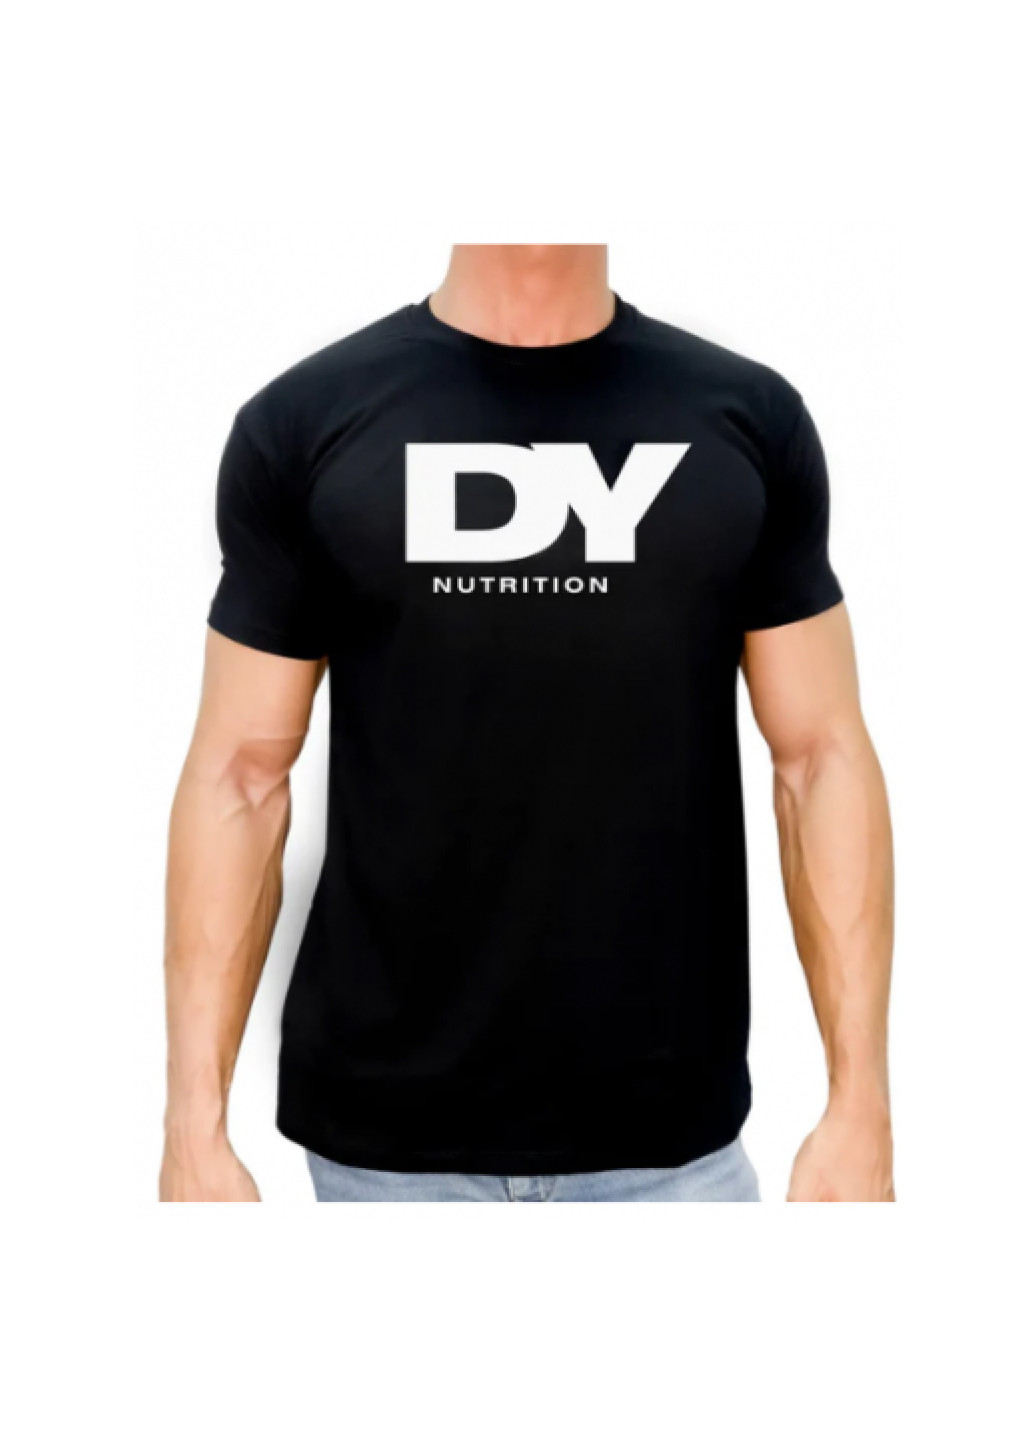 Черная футболка мужская l t-shirt malfini gold-l DY Nutrition